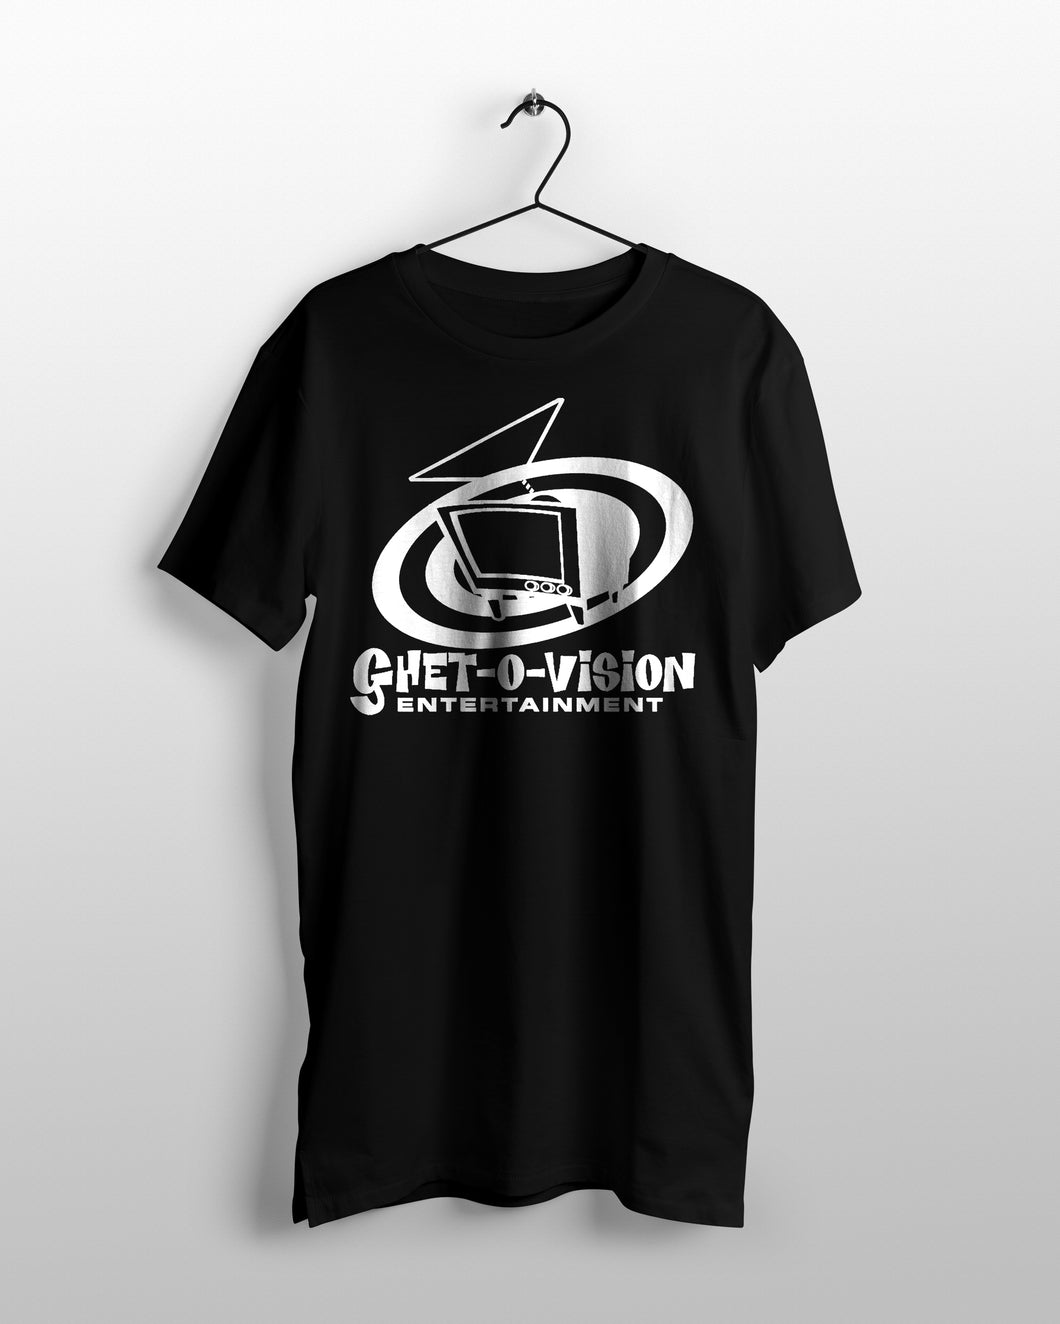 GHET-O-VISION T-SHIRT - BLACK / WHITE